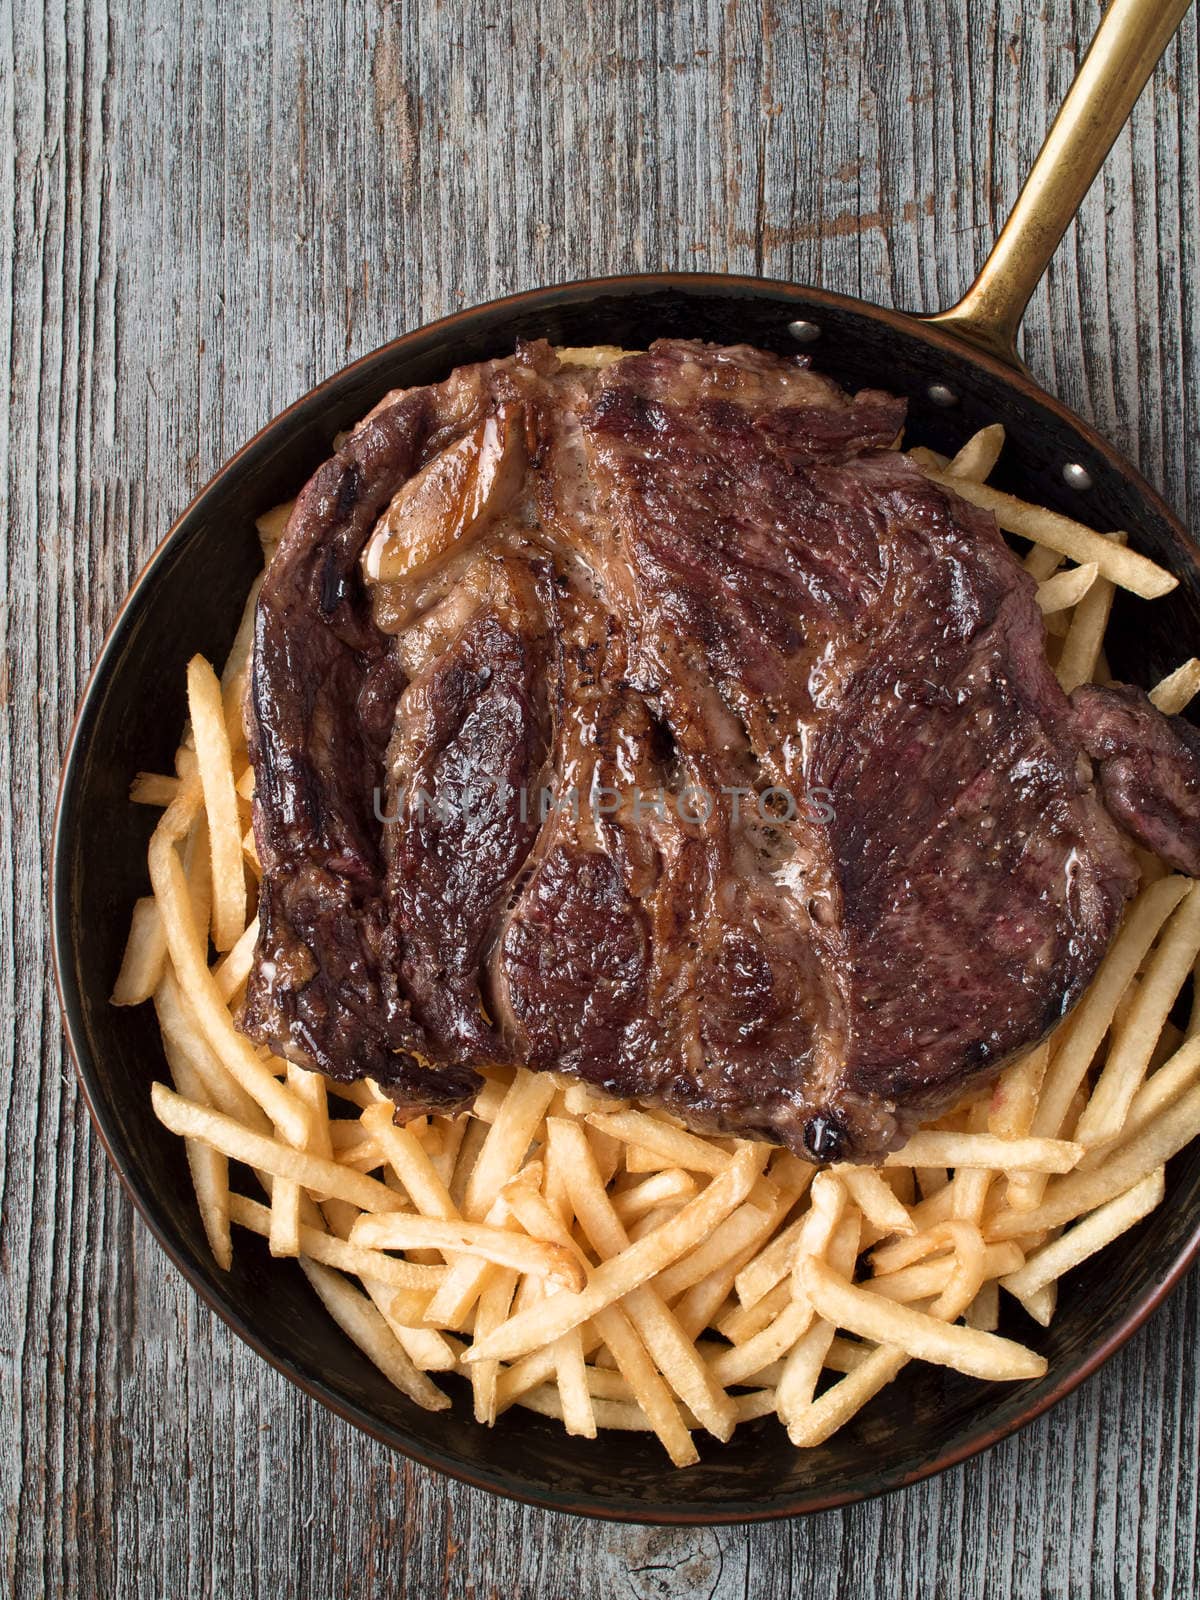 rustic steak frites by zkruger